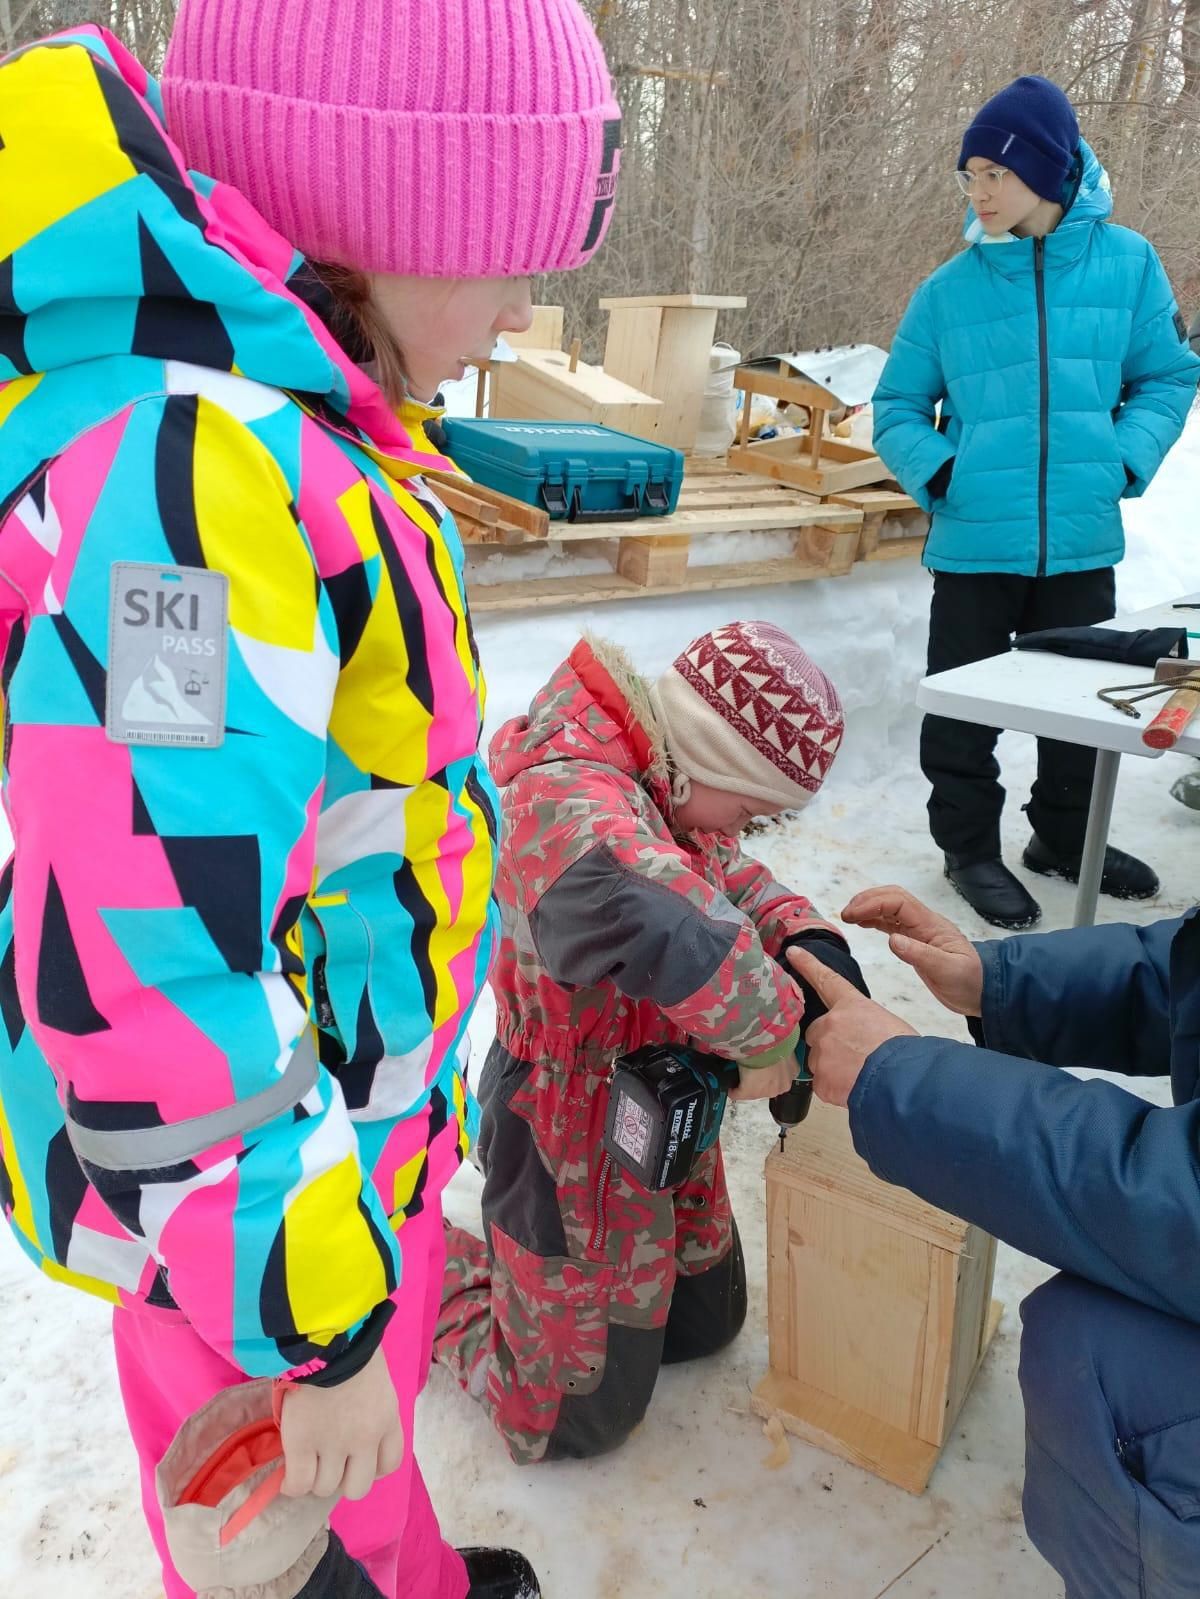 Казанские школьники посетили заказник «Свияжский» и своими руками собрали скворечники для птиц